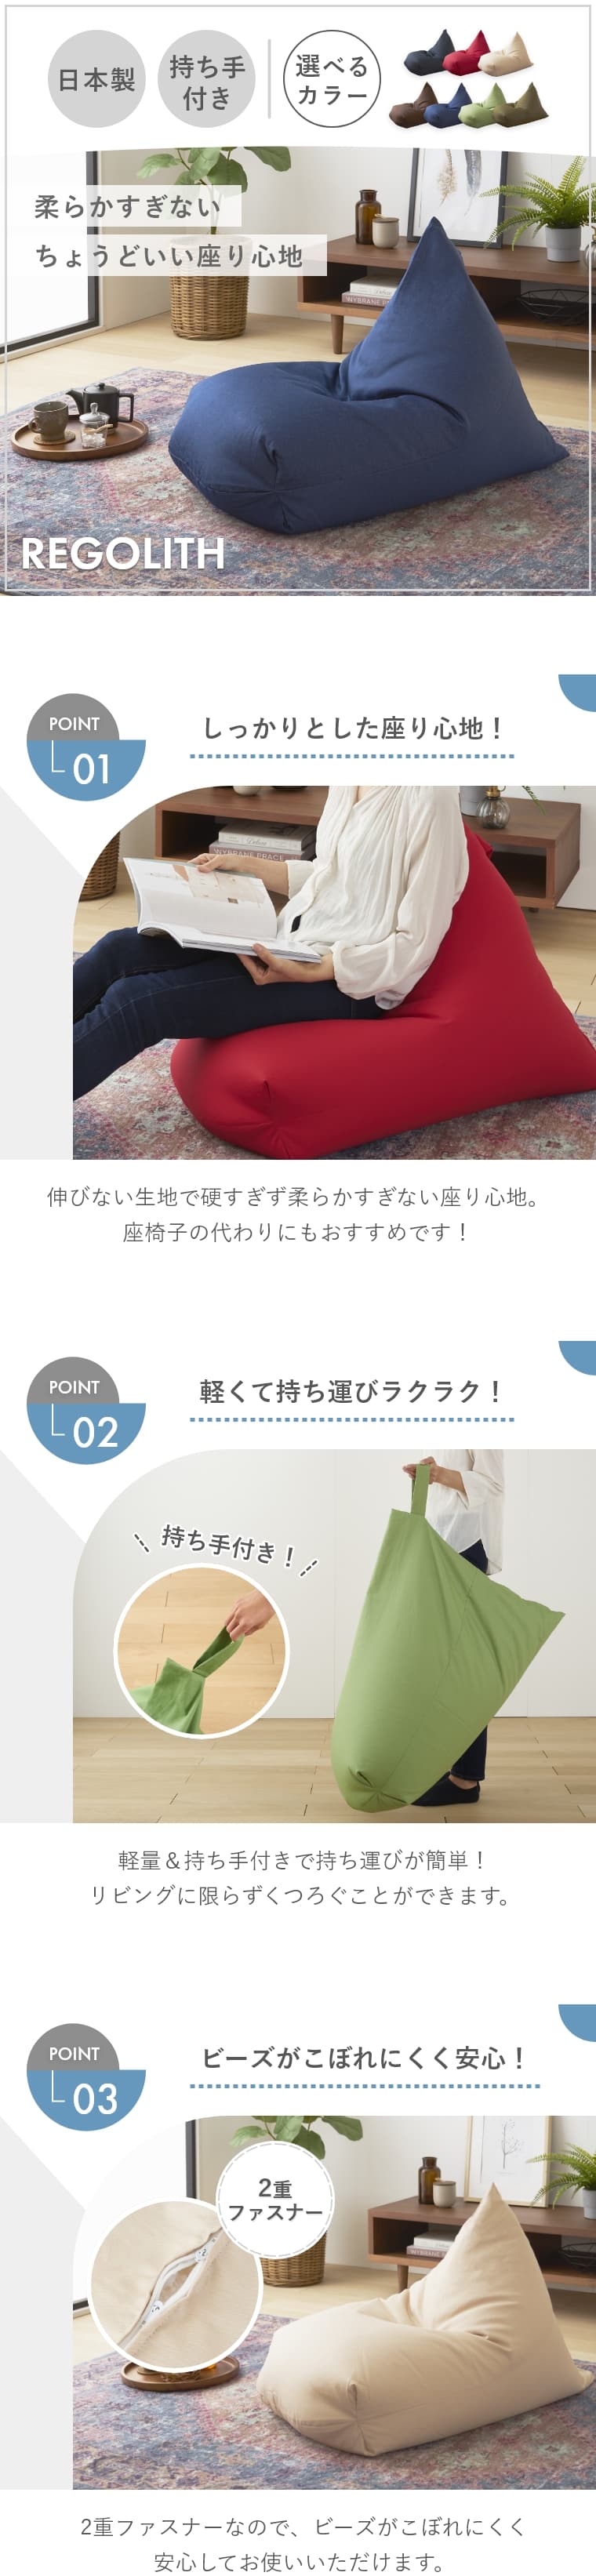 しっかりとした座り心地のシンプルな日本製ビーズクッション